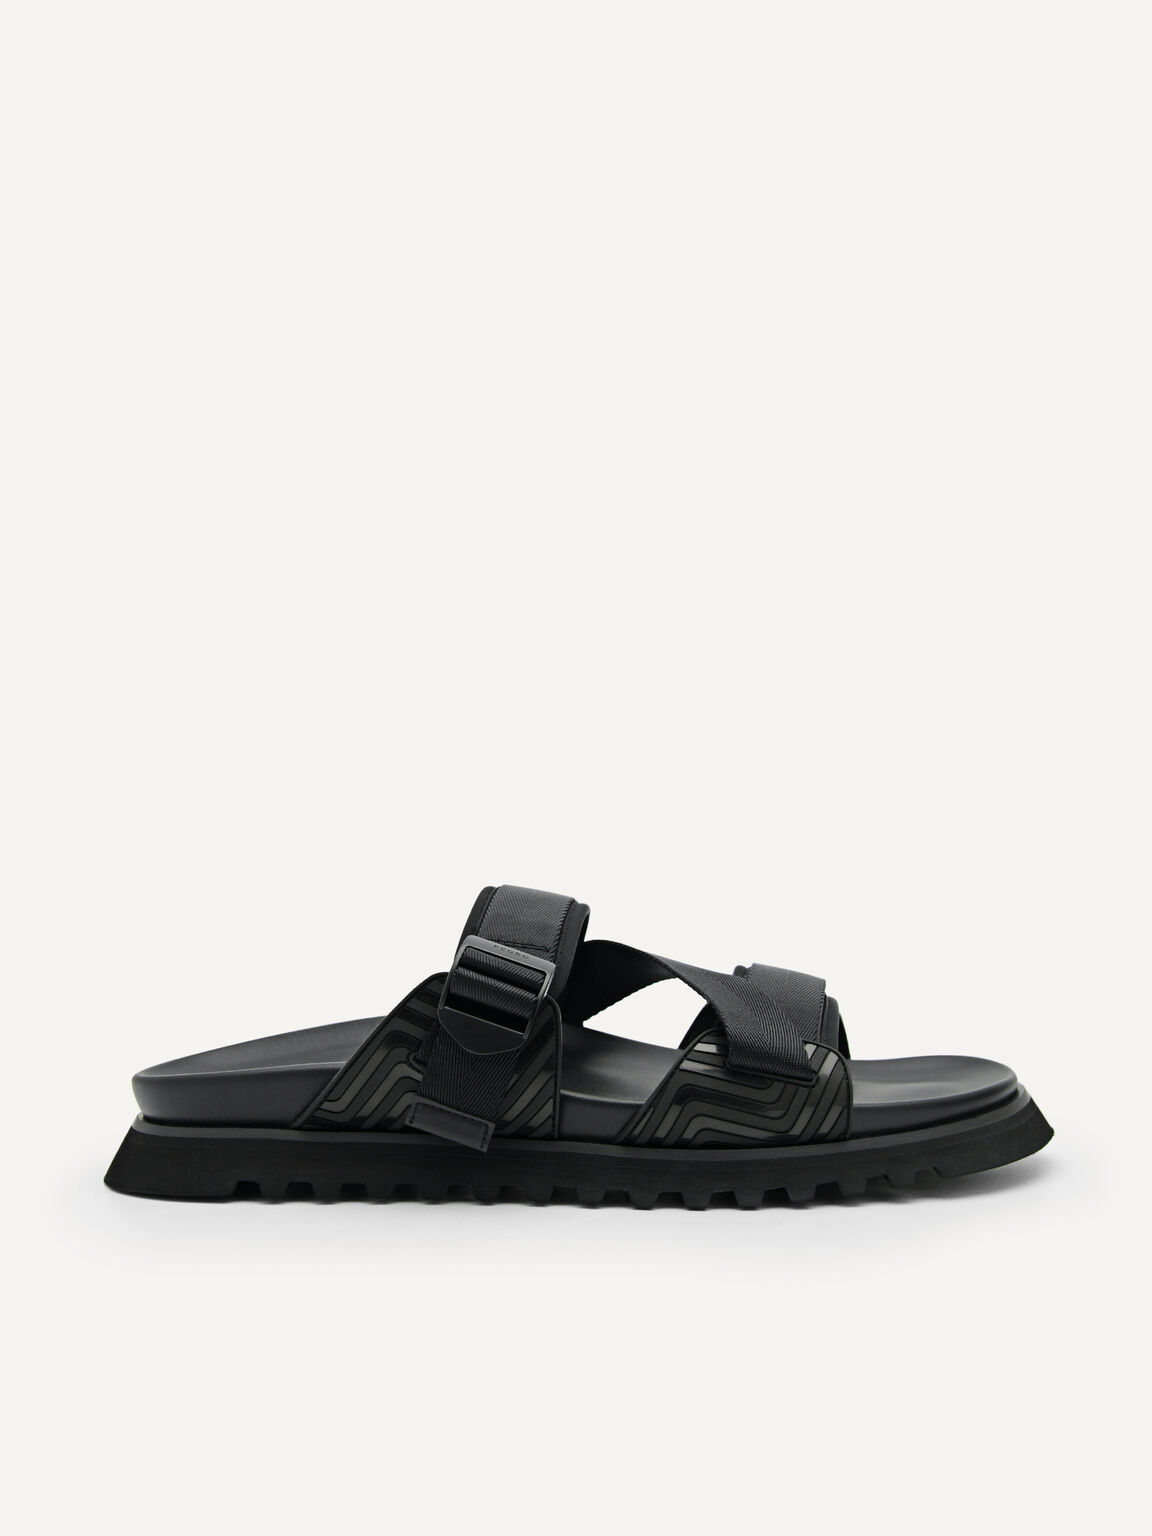 Nylon Strap Sandals, Black